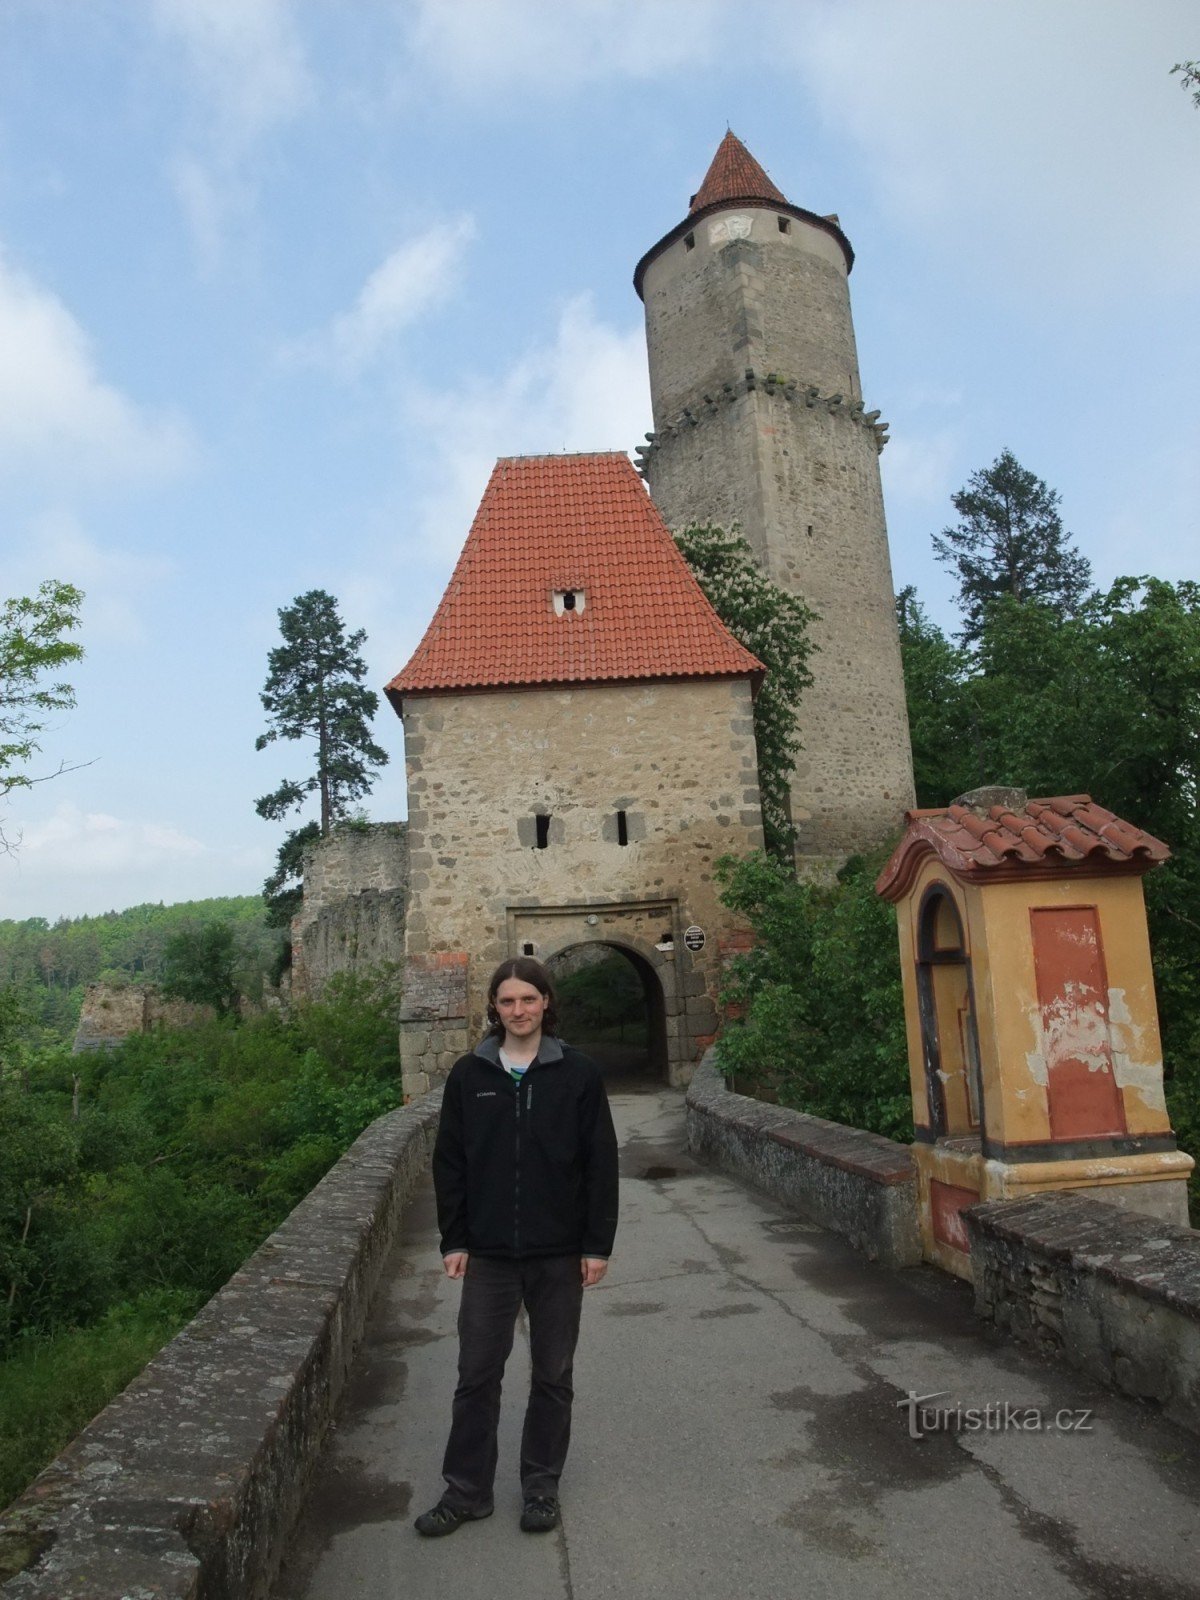 Castle Zvikov